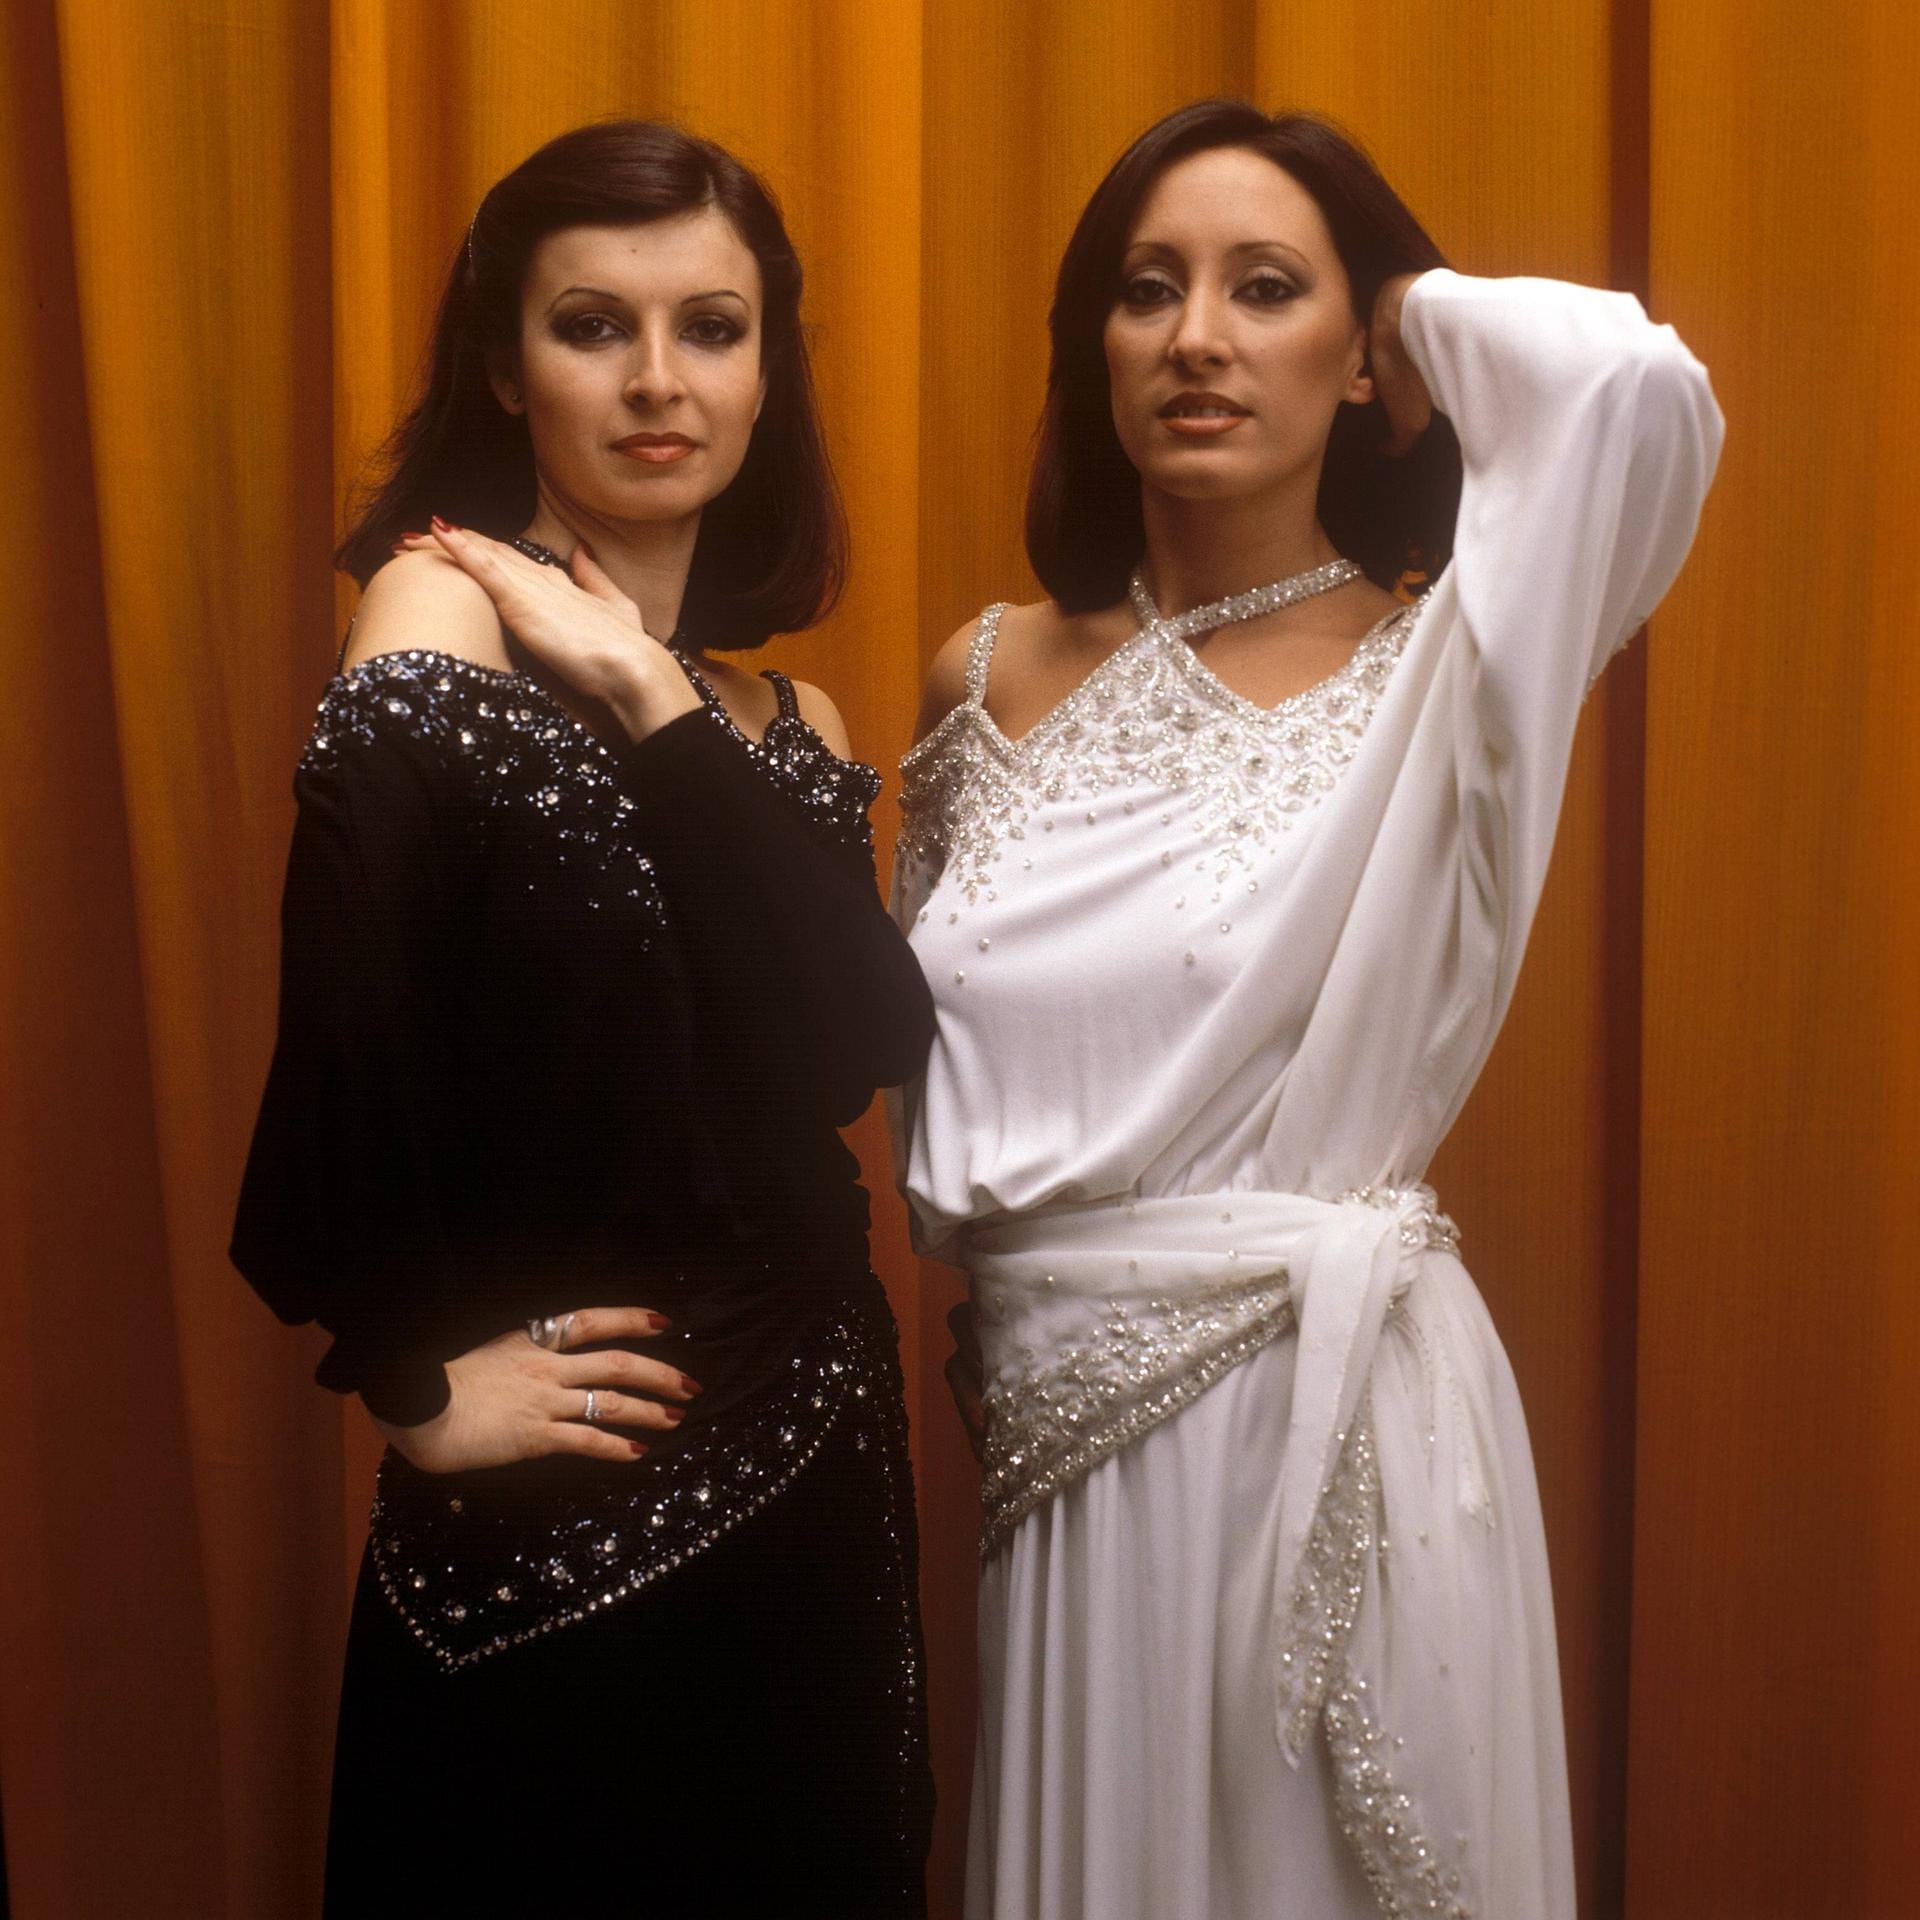 Das spanische Disco-Duo Baccara sang 1978 für Luxemburg "Parlez-vous français?" und landete damit auf dem siebten Platz.